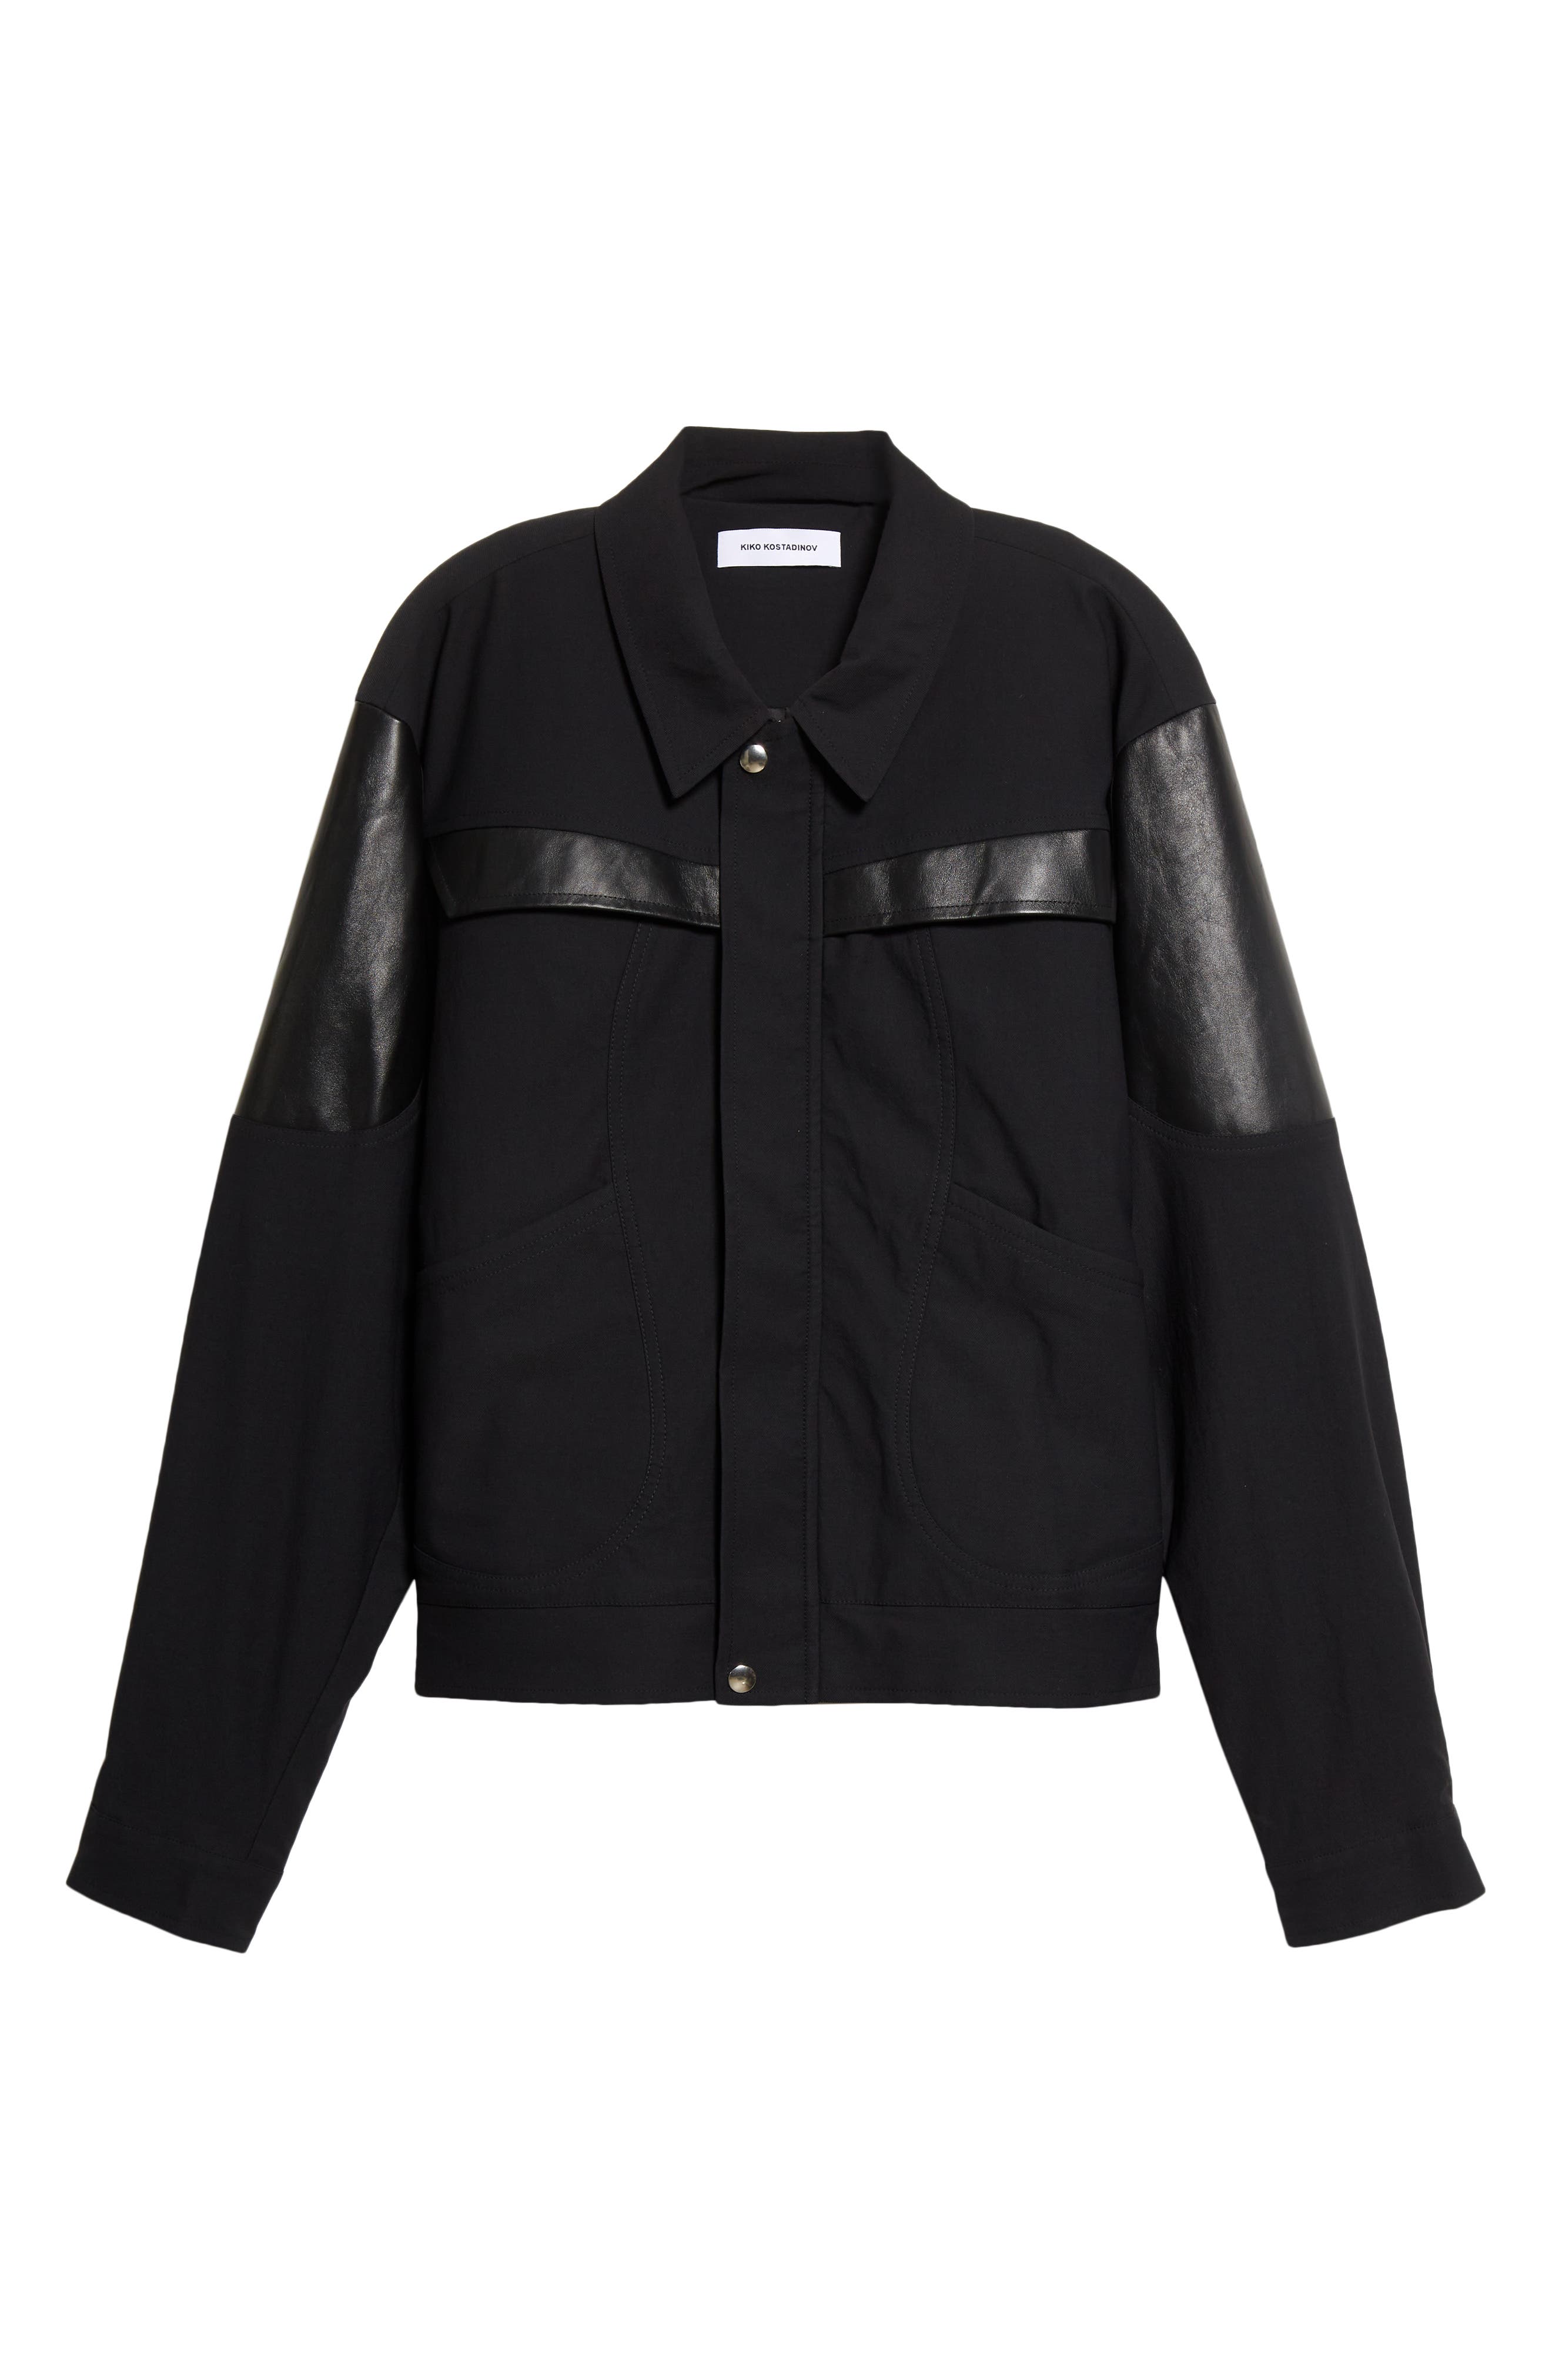 KIKO KOSTADINOV McNamara Uniform Stretch Nylon & Leather Jacket in